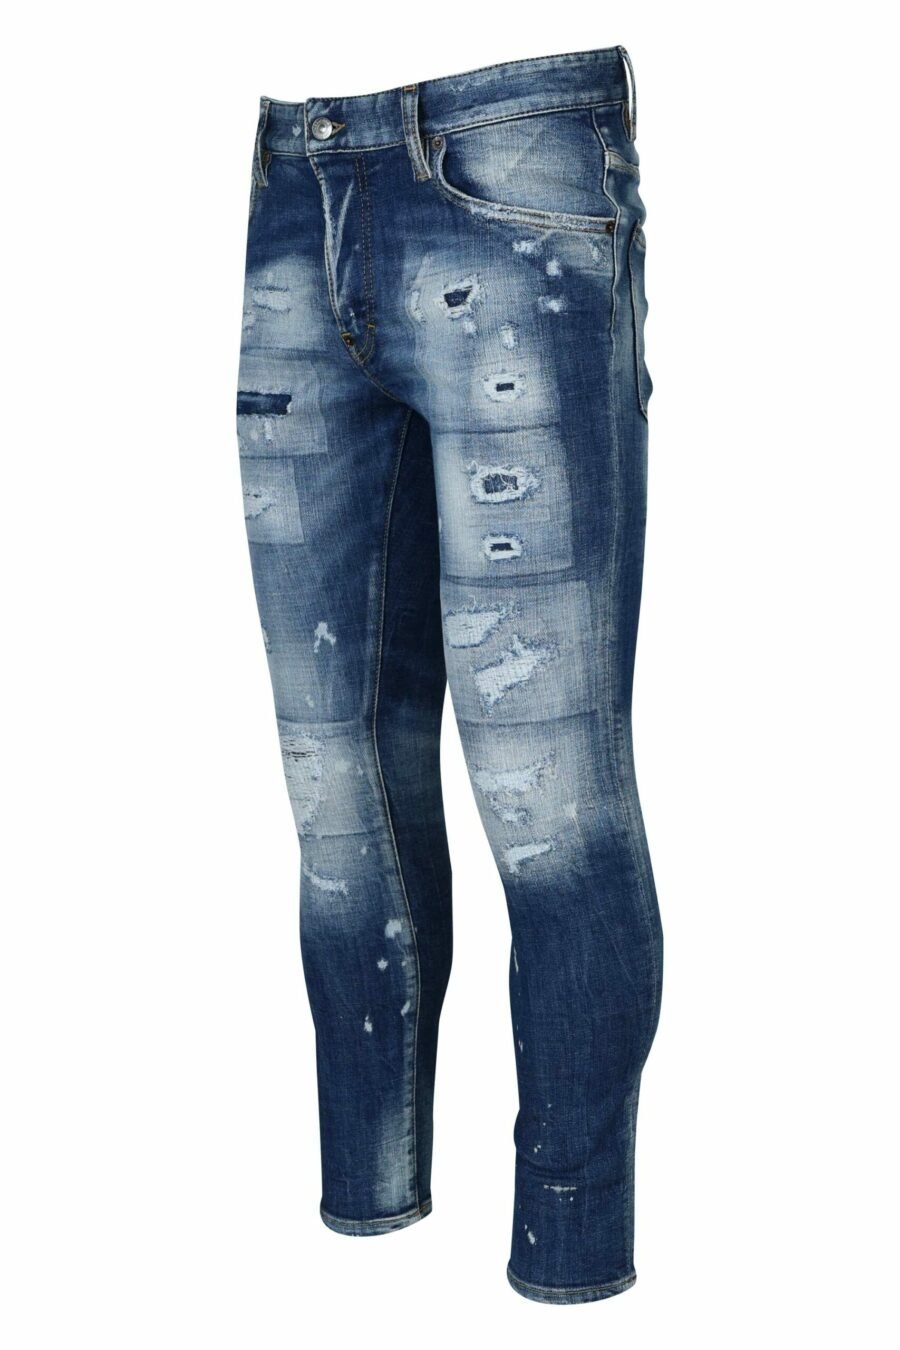 Blaue "super twinky jean" Jeans mit Rissen - 8054148339029 1 skaliert